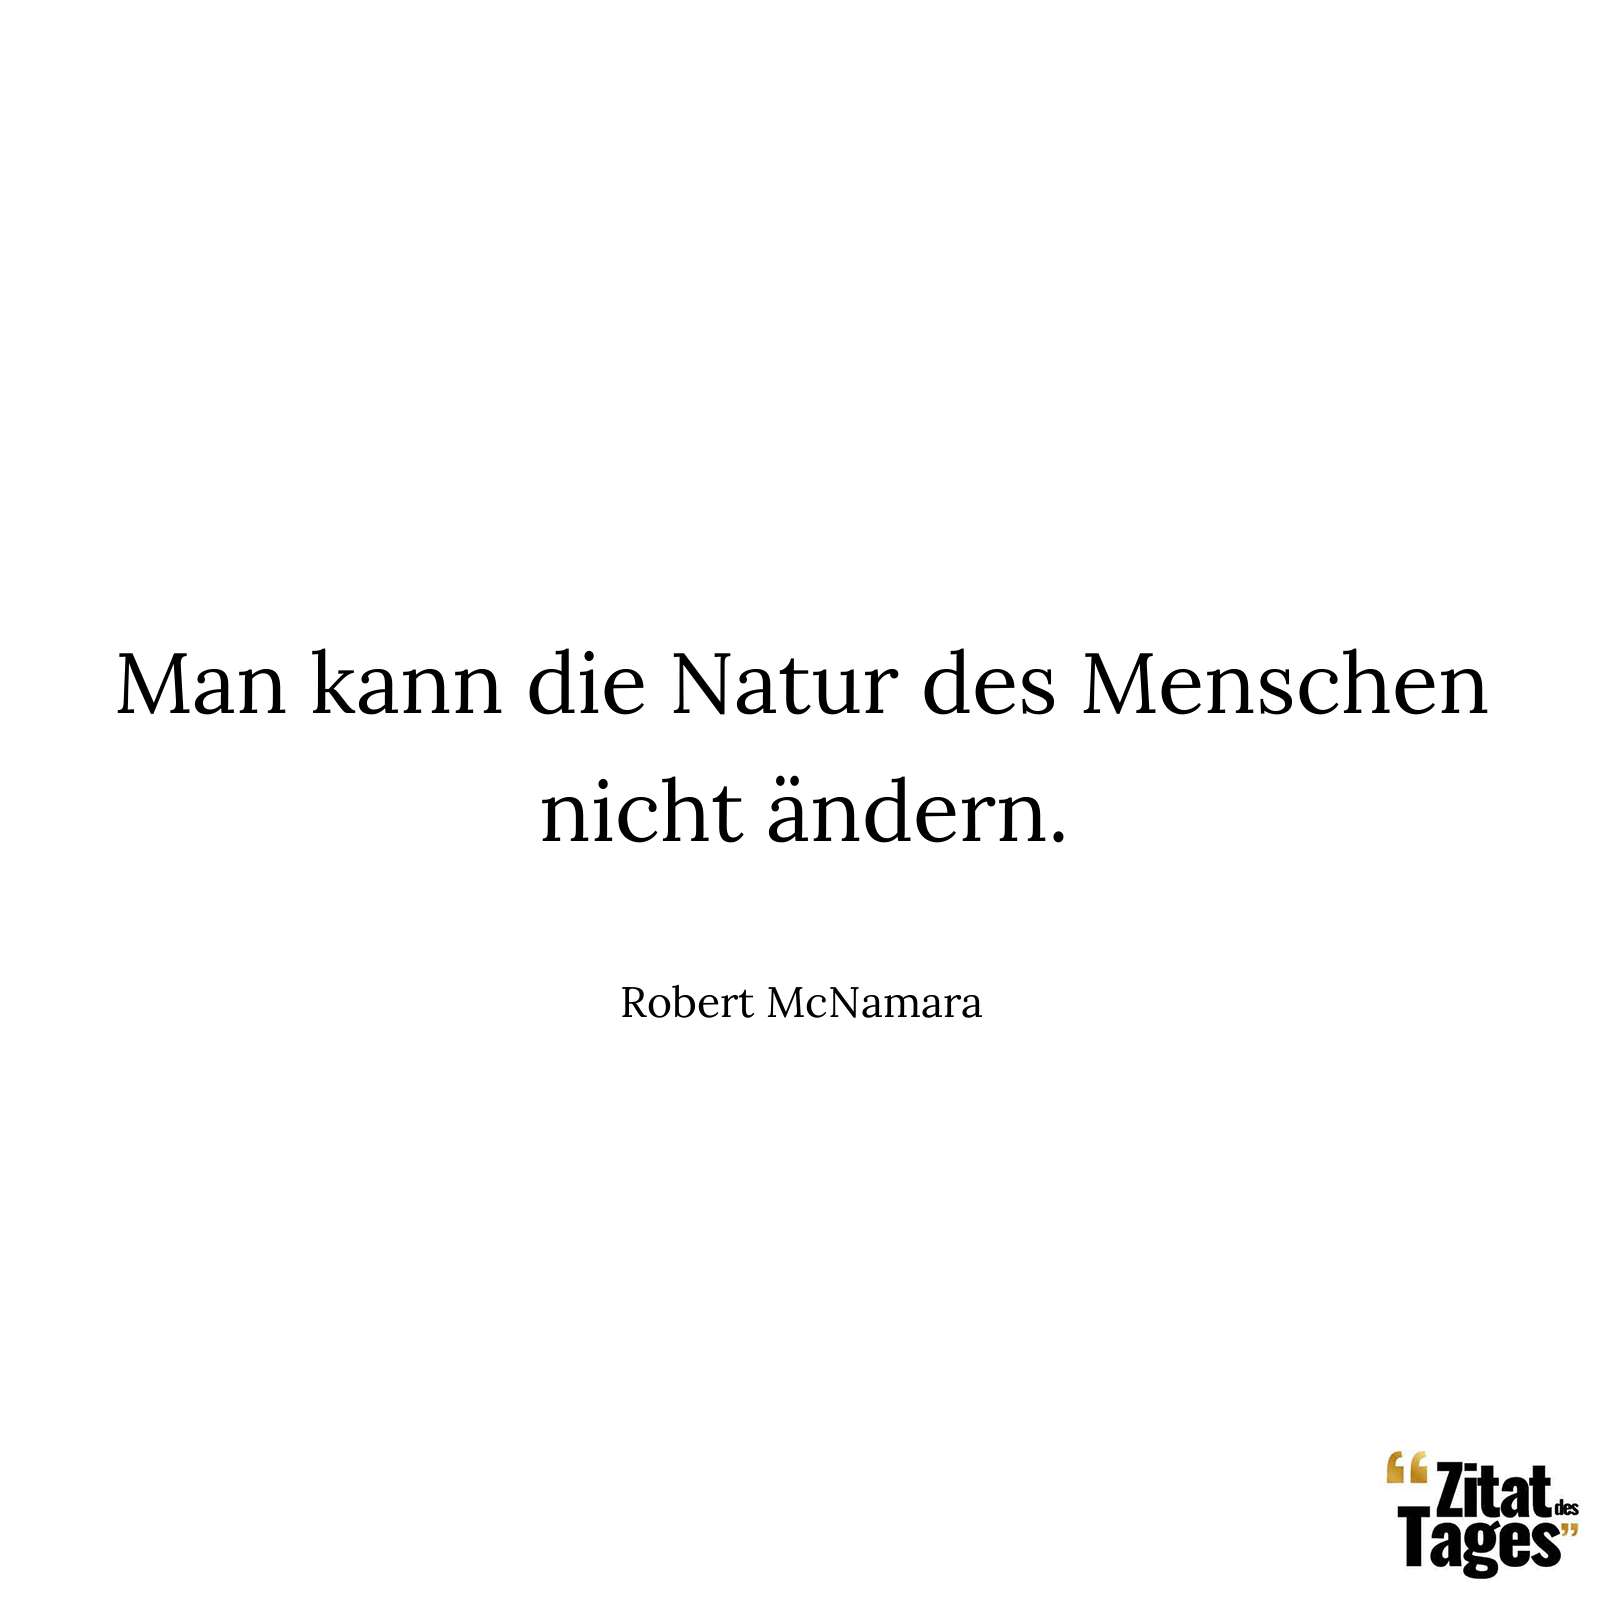 Man kann die Natur des Menschen nicht ändern. - Robert McNamara